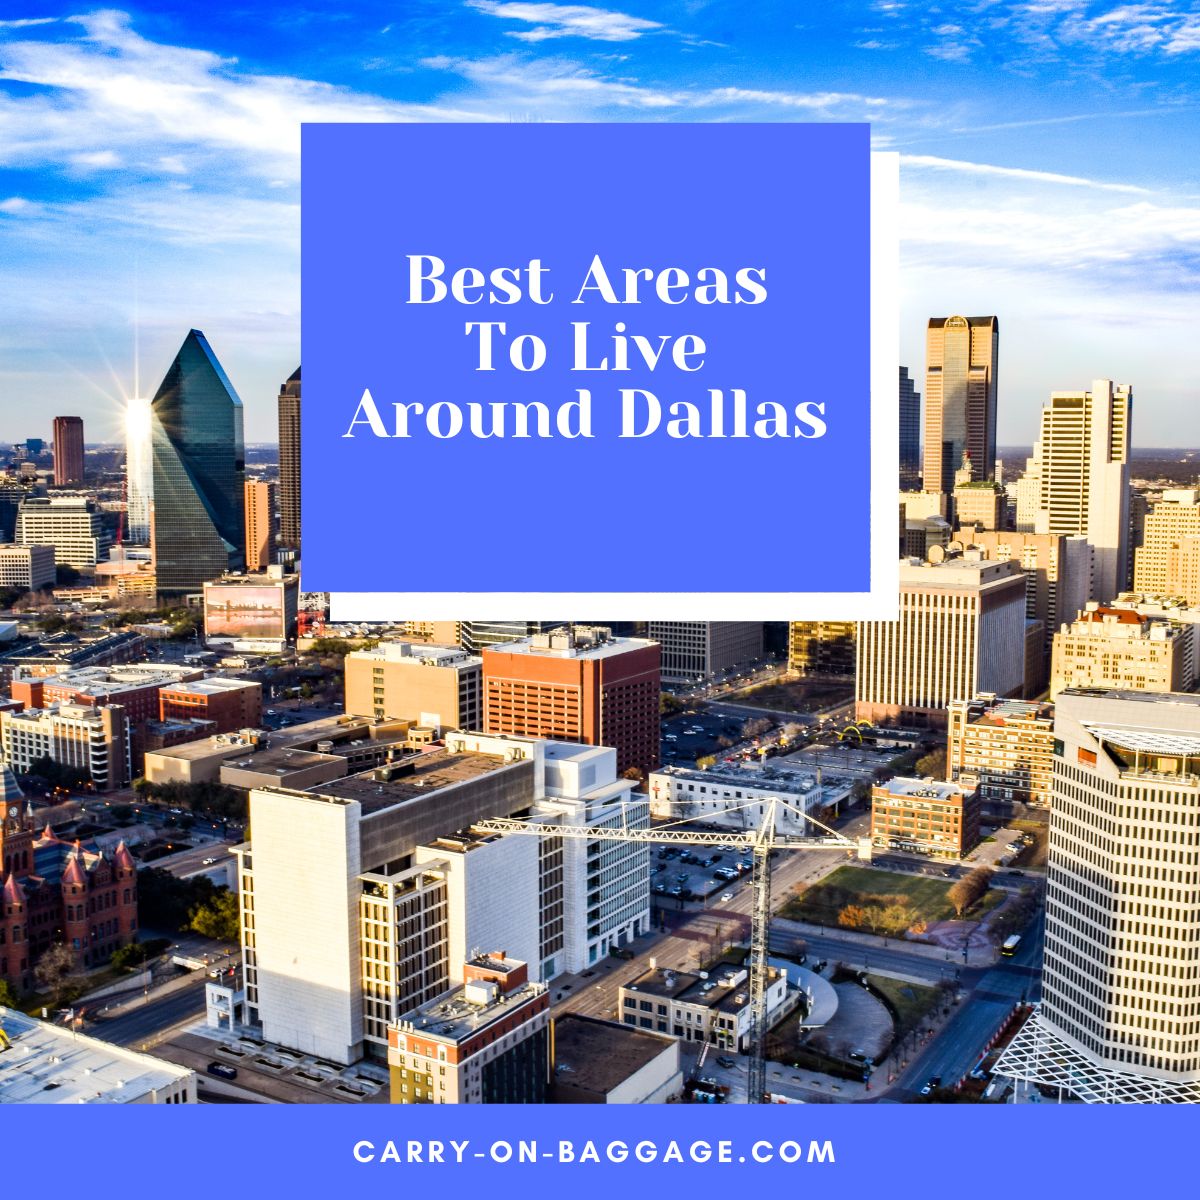 Best Areas to Live Around Dallas